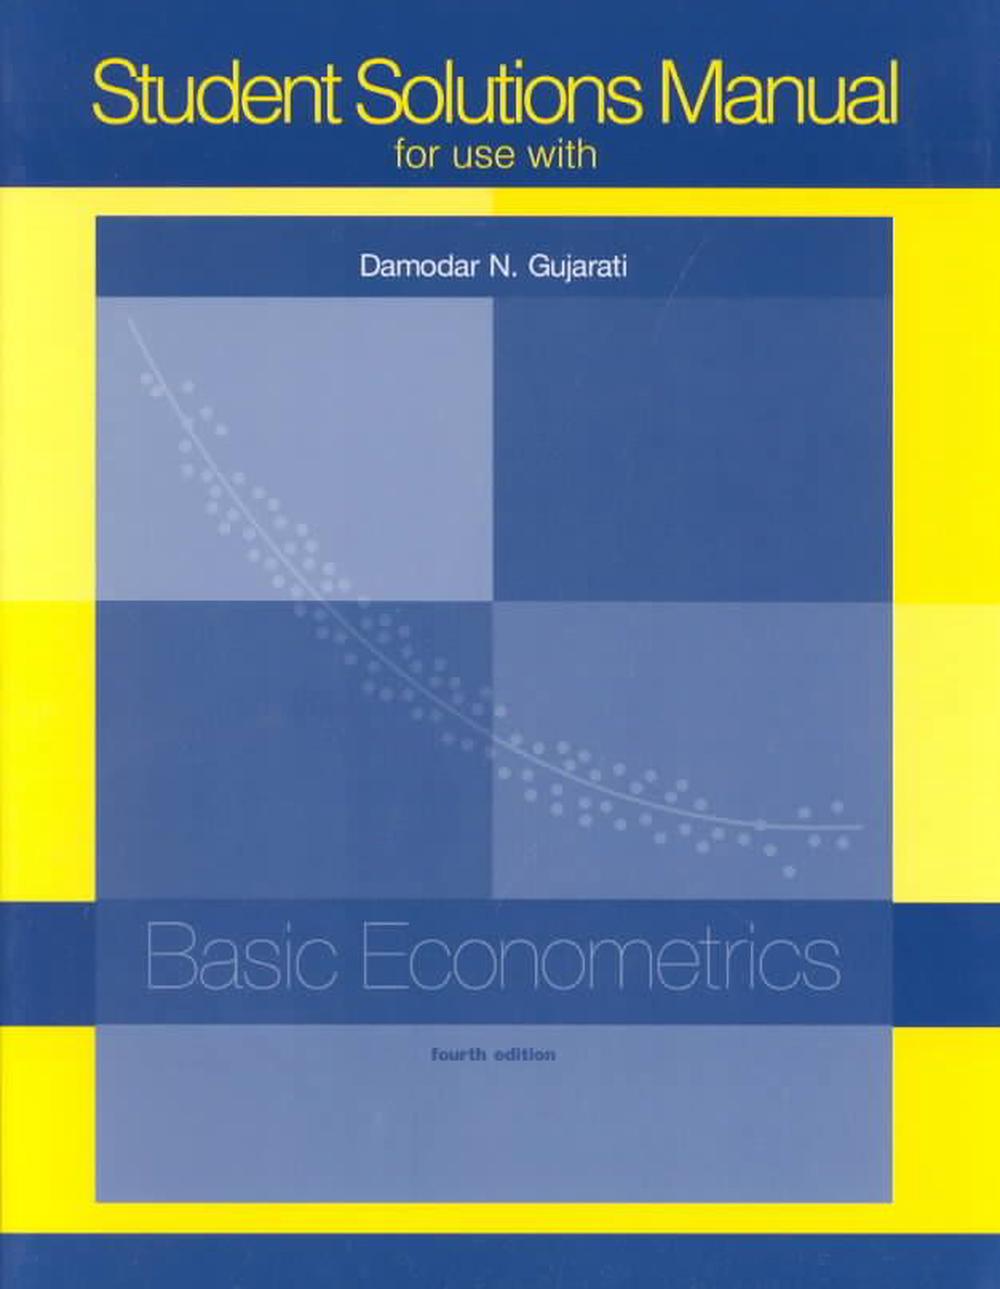 damodar gujarati basic econometrics pdf